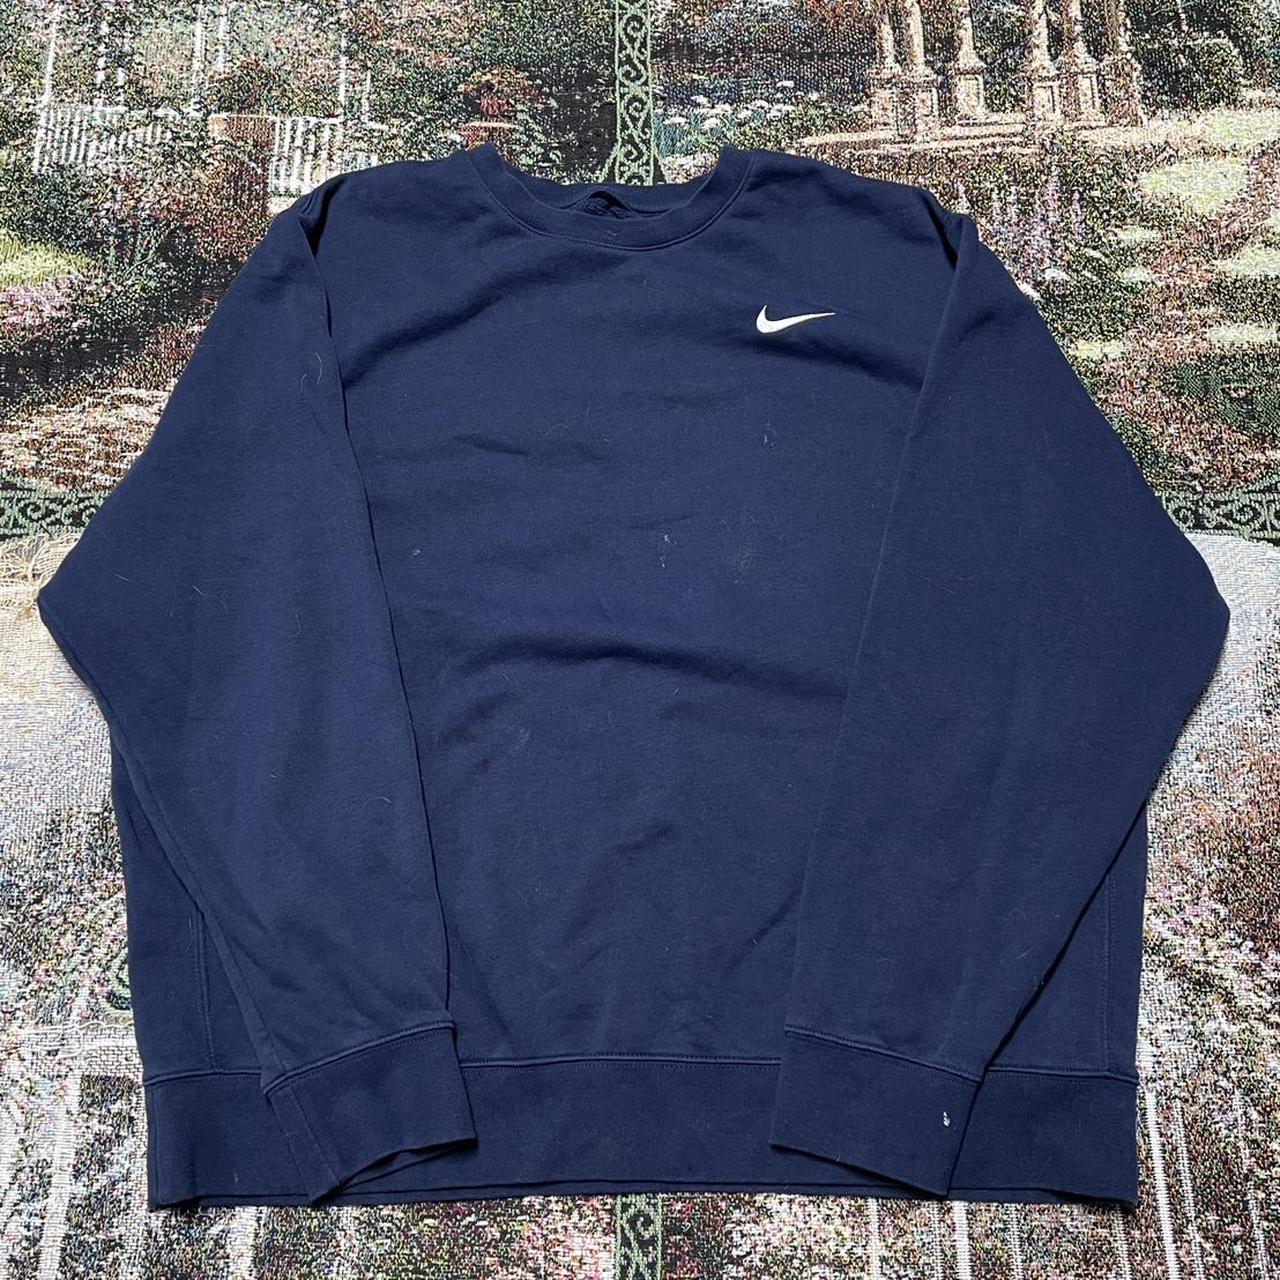 Nike sweatshirt-vintage-90s - Depop